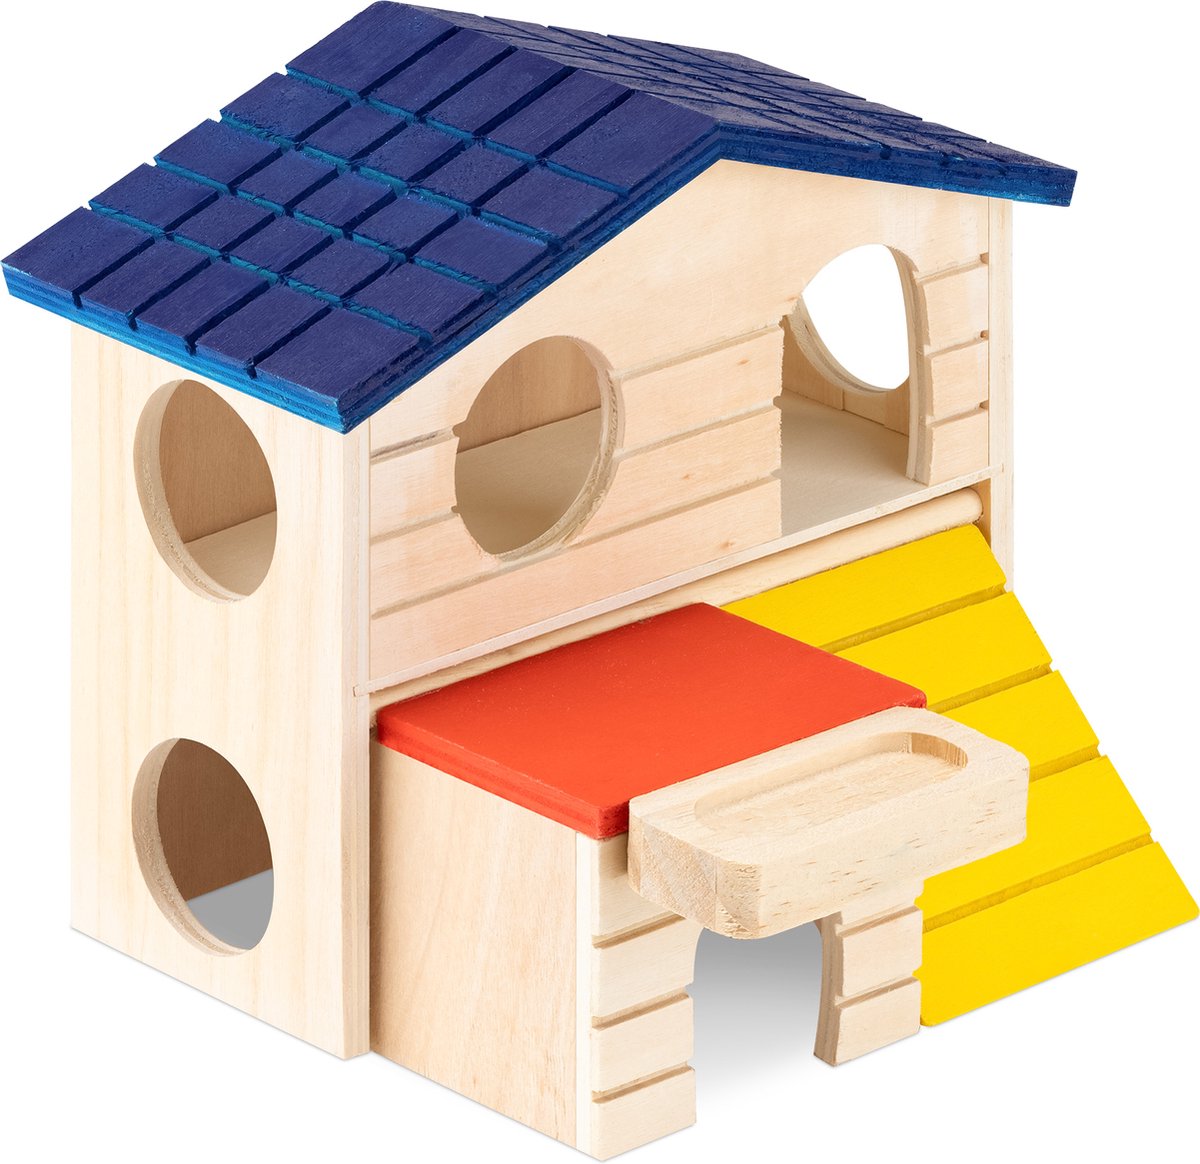 Navaris speelhuisje voor hamsters - Hamster huisje voor in de kooi - Speeltje voor knaagdieren - Houten hamsterhuisje 16 x 15,5 x 15 cm - Navaris